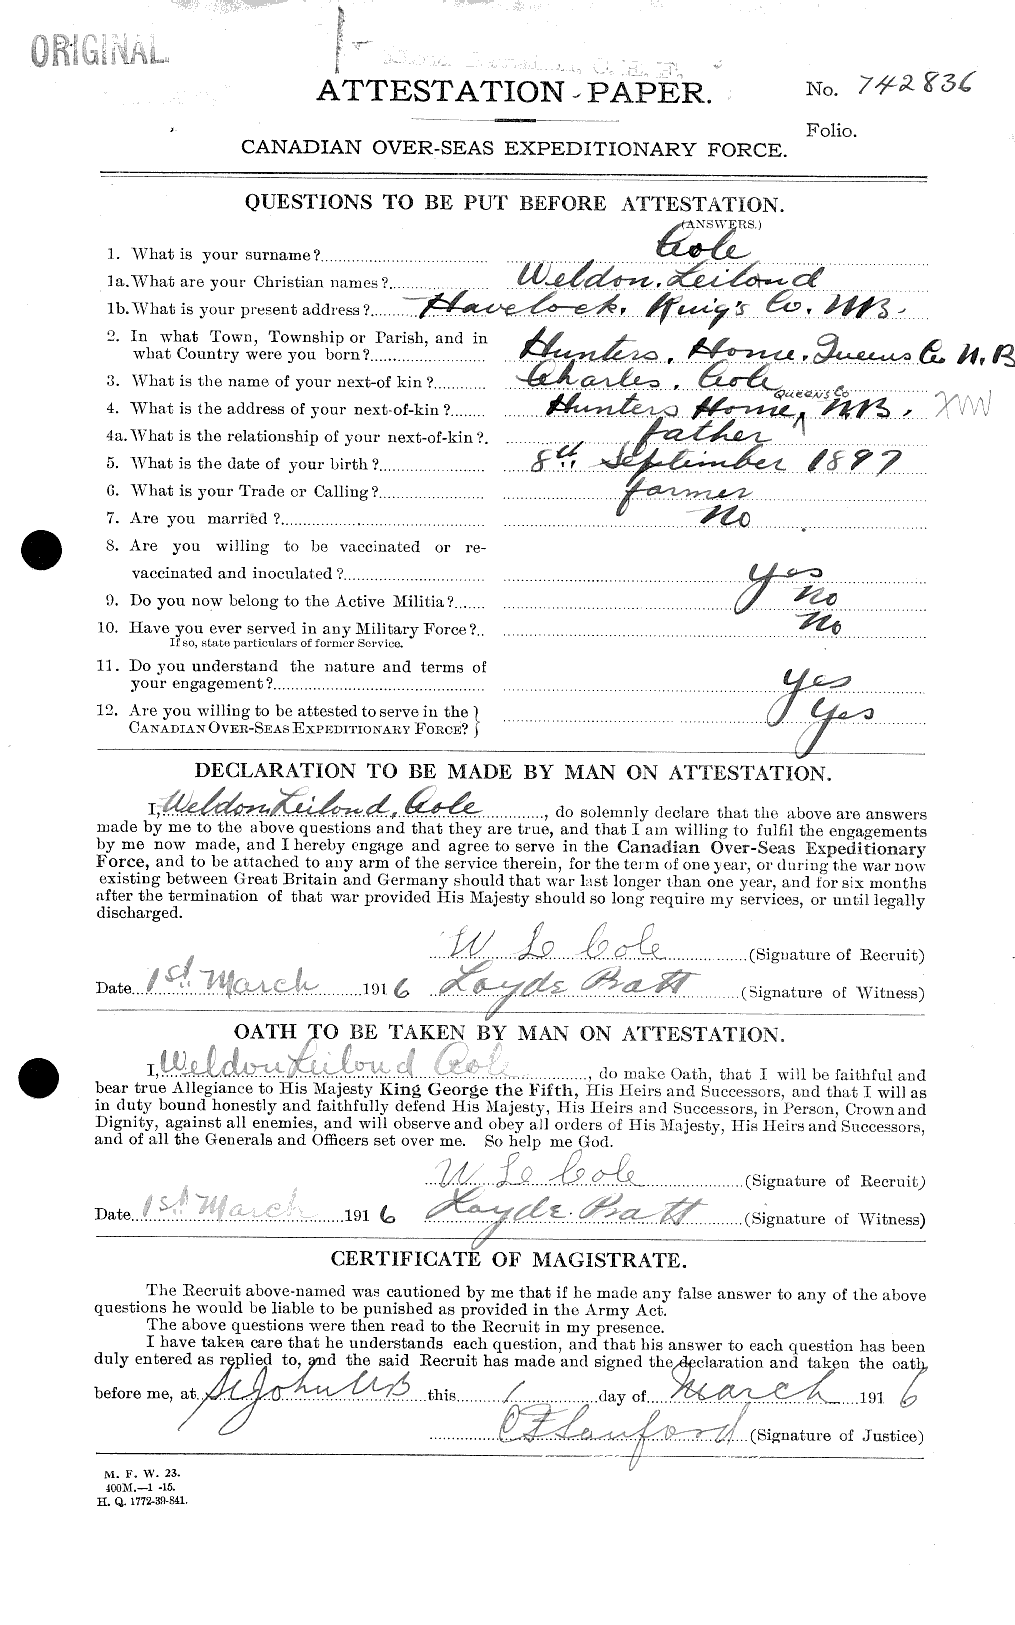 Dossiers du Personnel de la Première Guerre mondiale - CEC 027980a